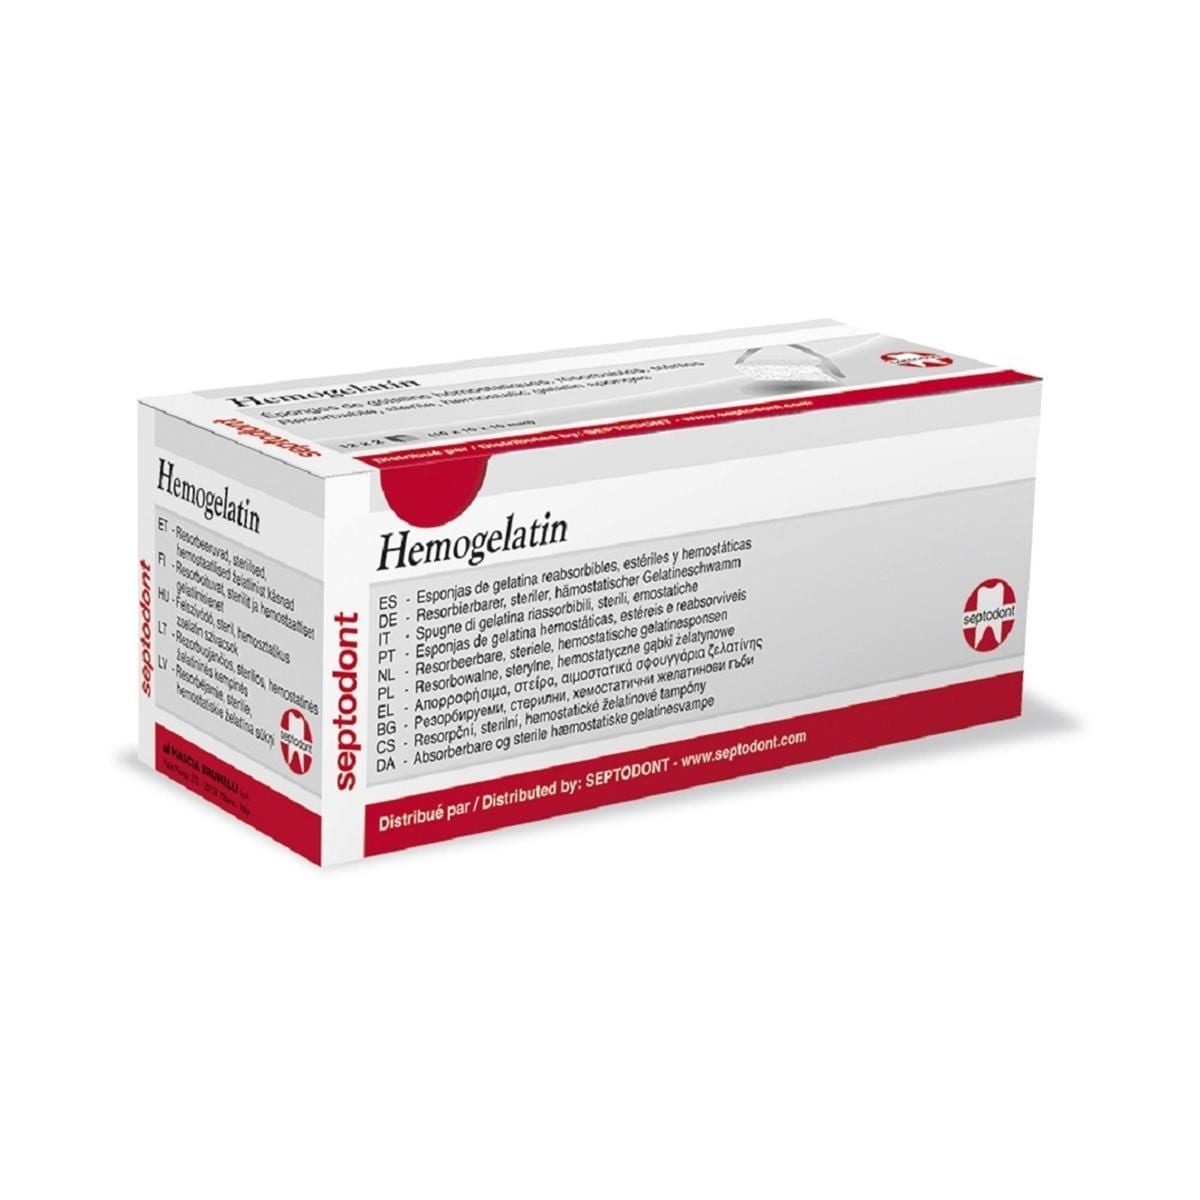 Hemogelatin - Verpakking, 24 stuks